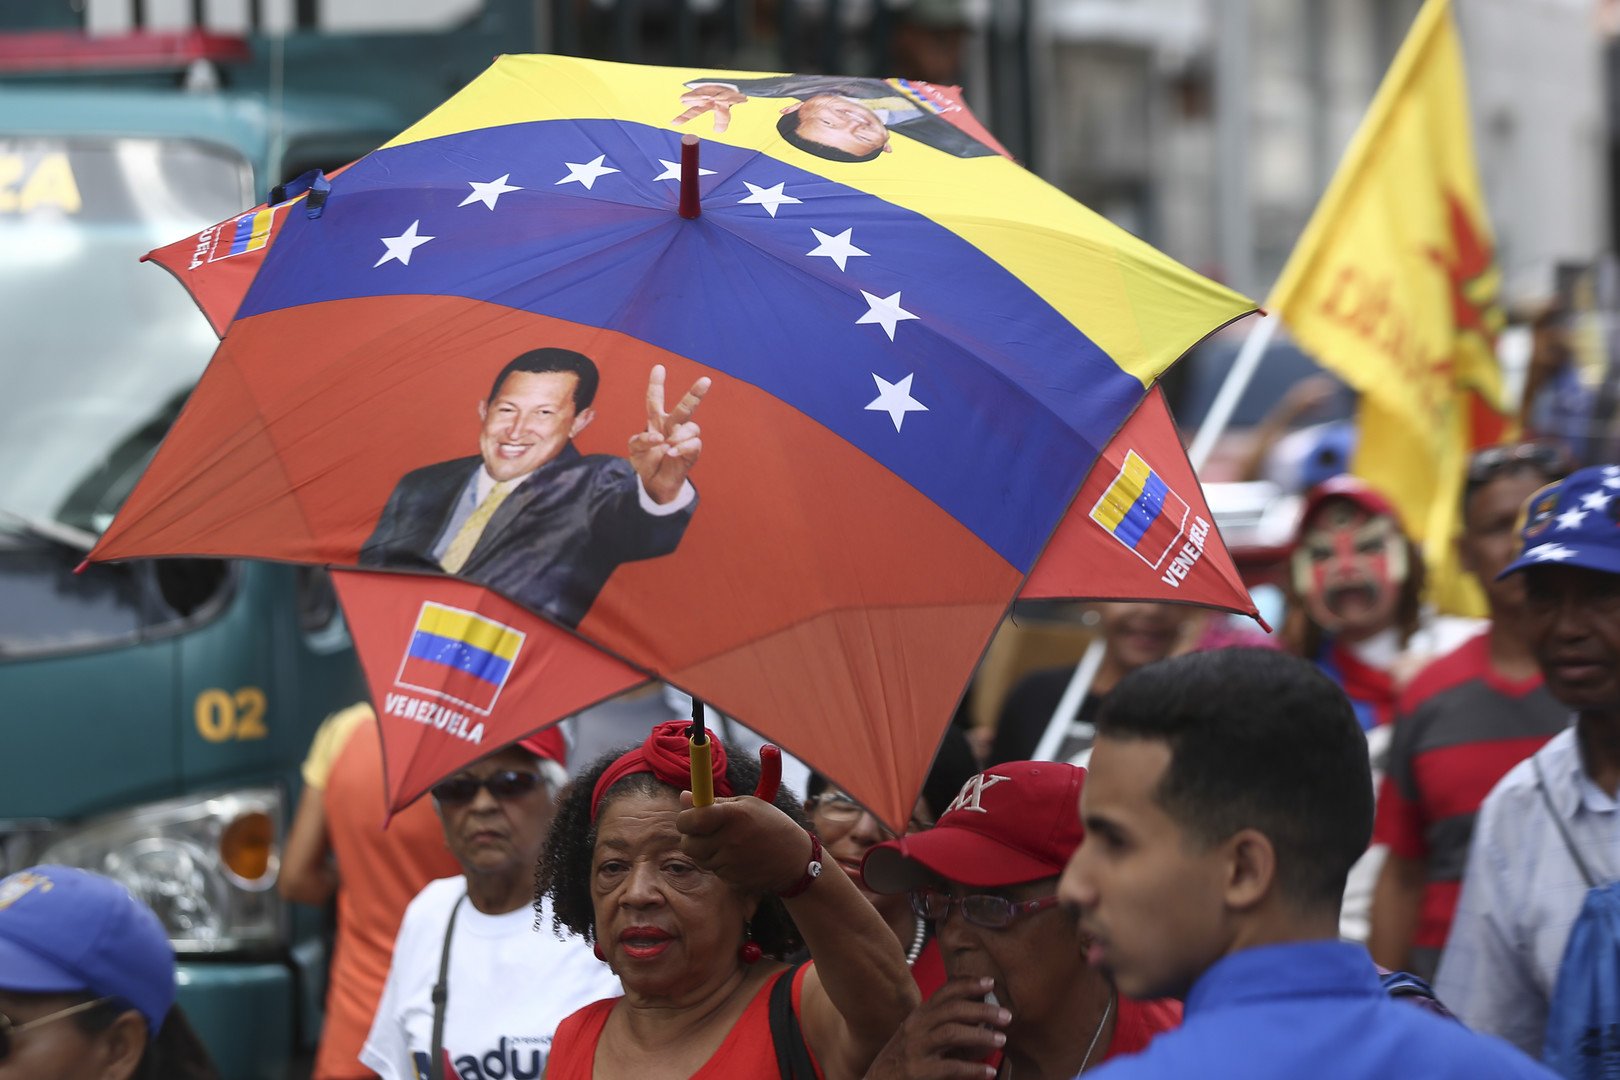 واشنطن تجد من يحفظ ماء وجهها في فنزويلا 